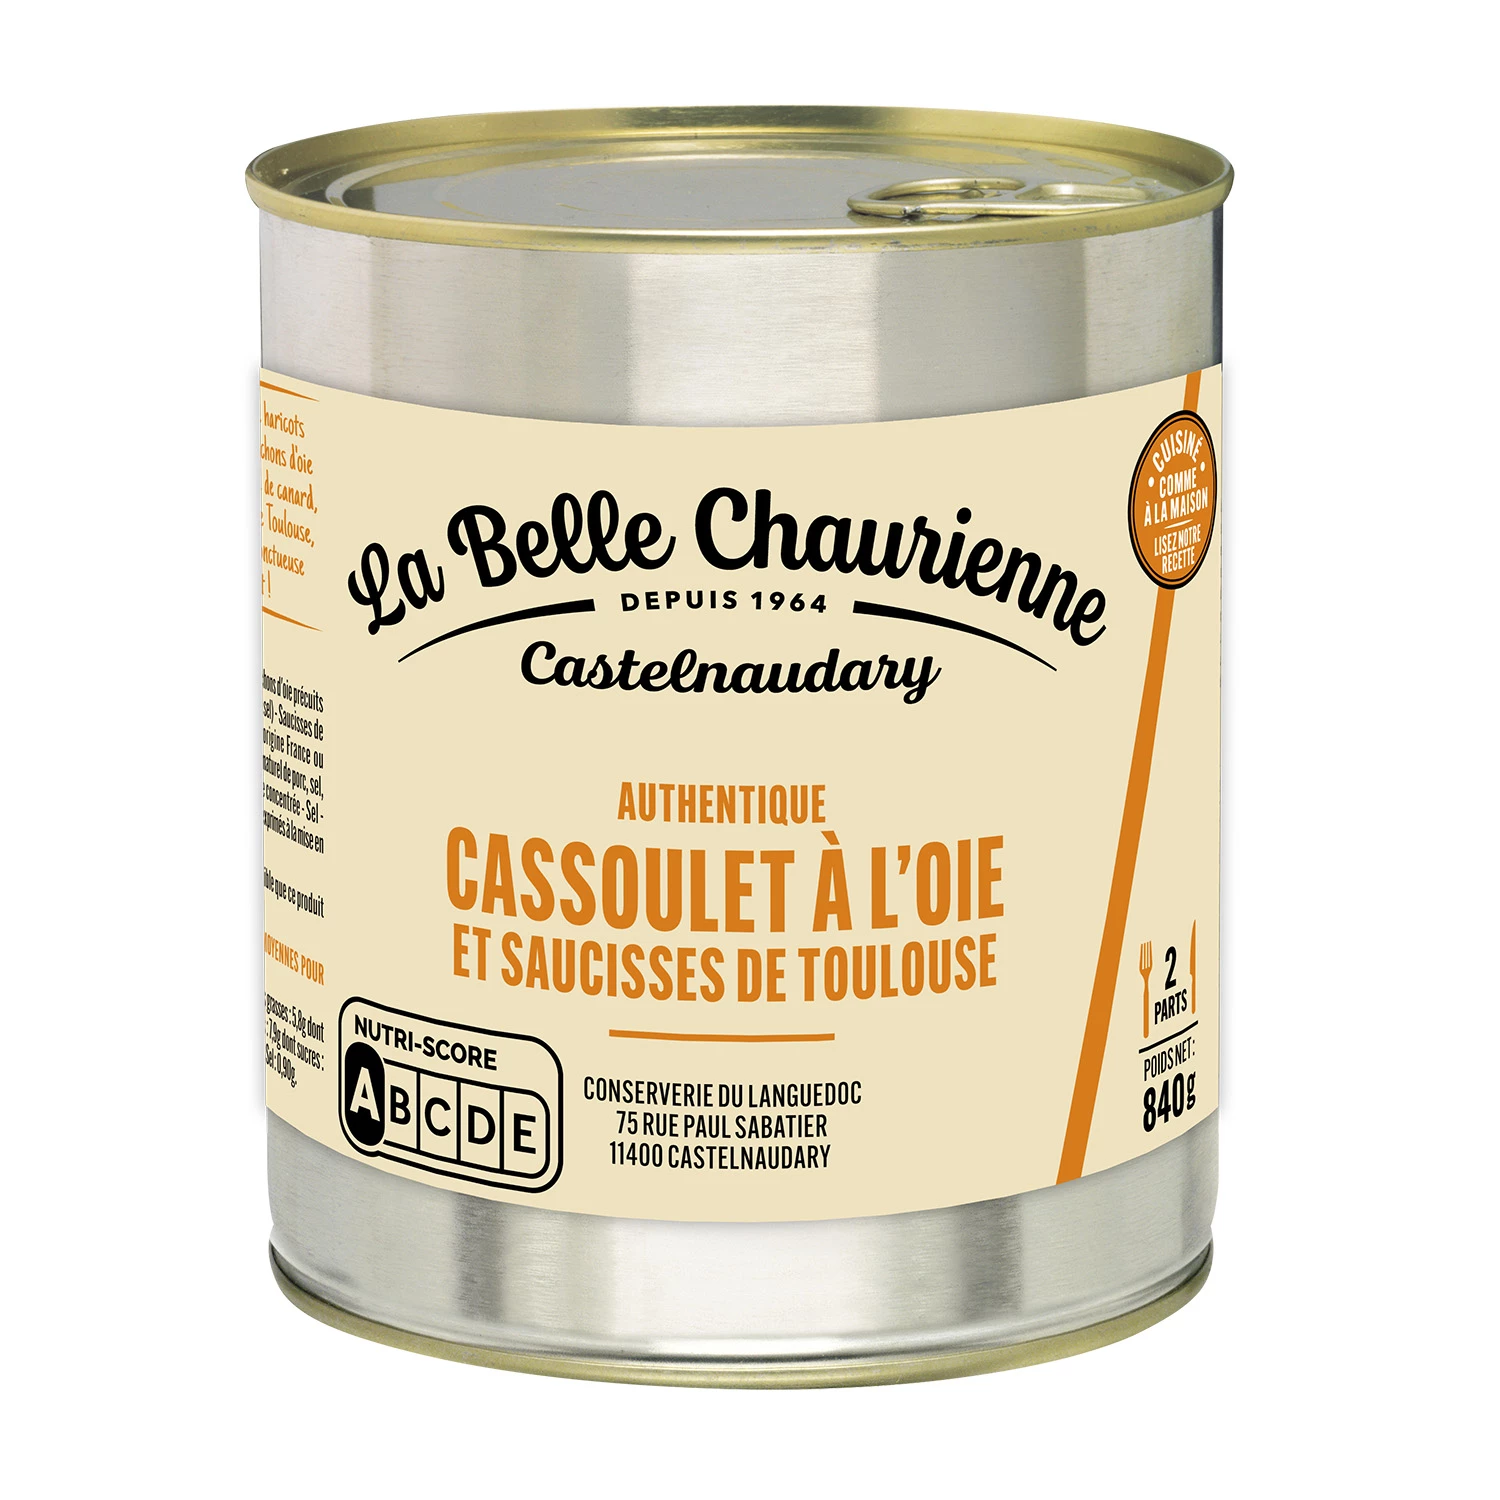 Cassoulet Con Confit D'oca 840g - LA BELLE CHAURIENNE